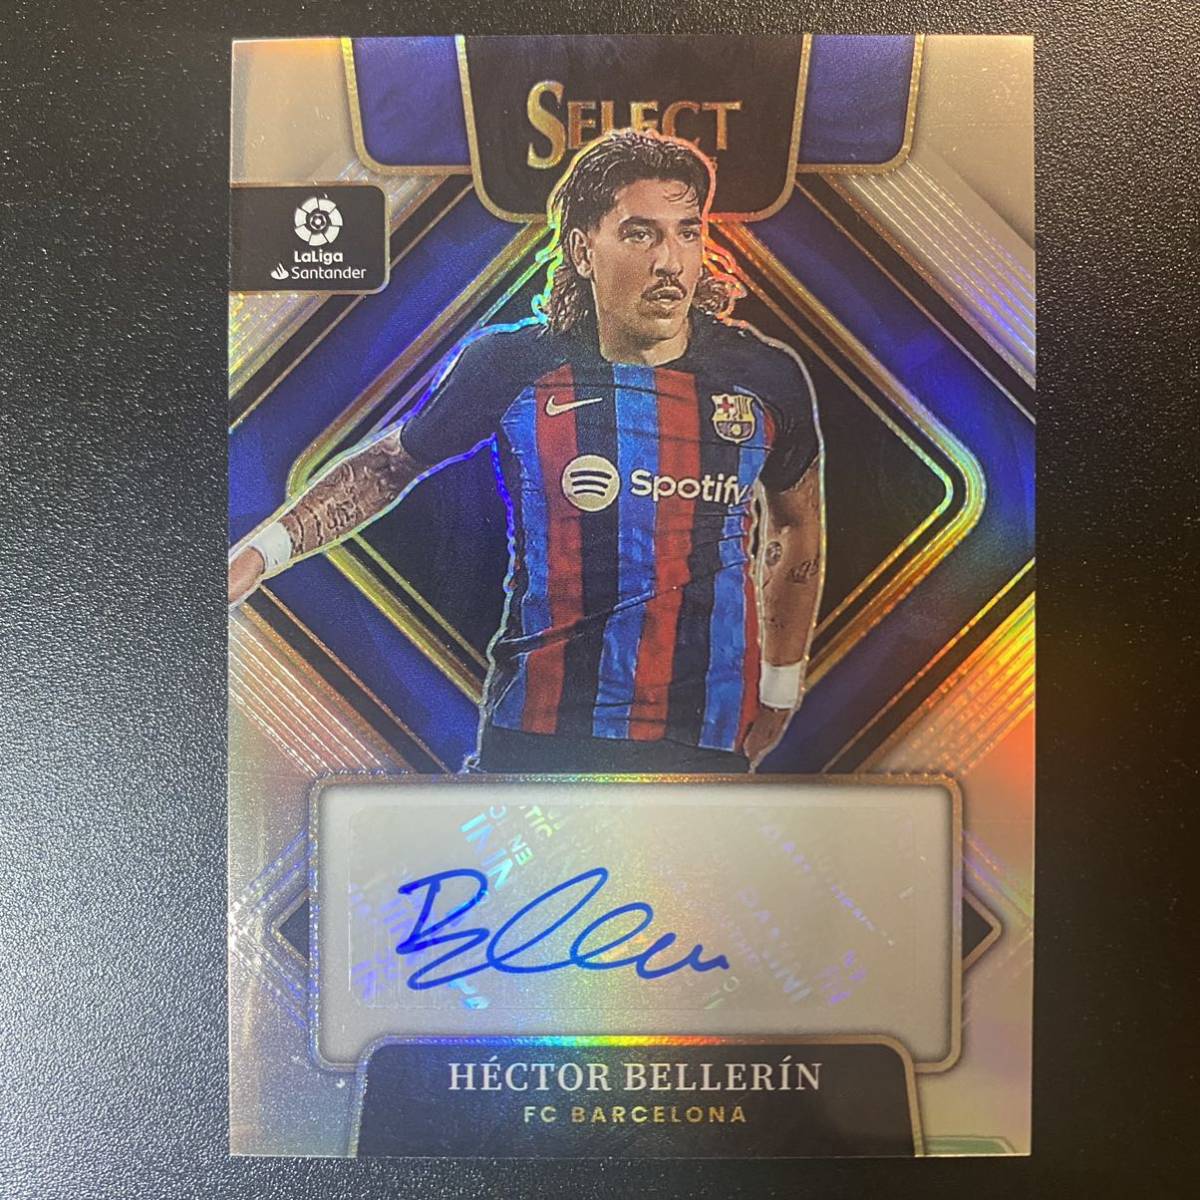 2022-23 Panini Select La Liga Signatures Hector Bellerin Auto 直筆サインカード FCバルセロナ エクトル・ベジェリン_画像1